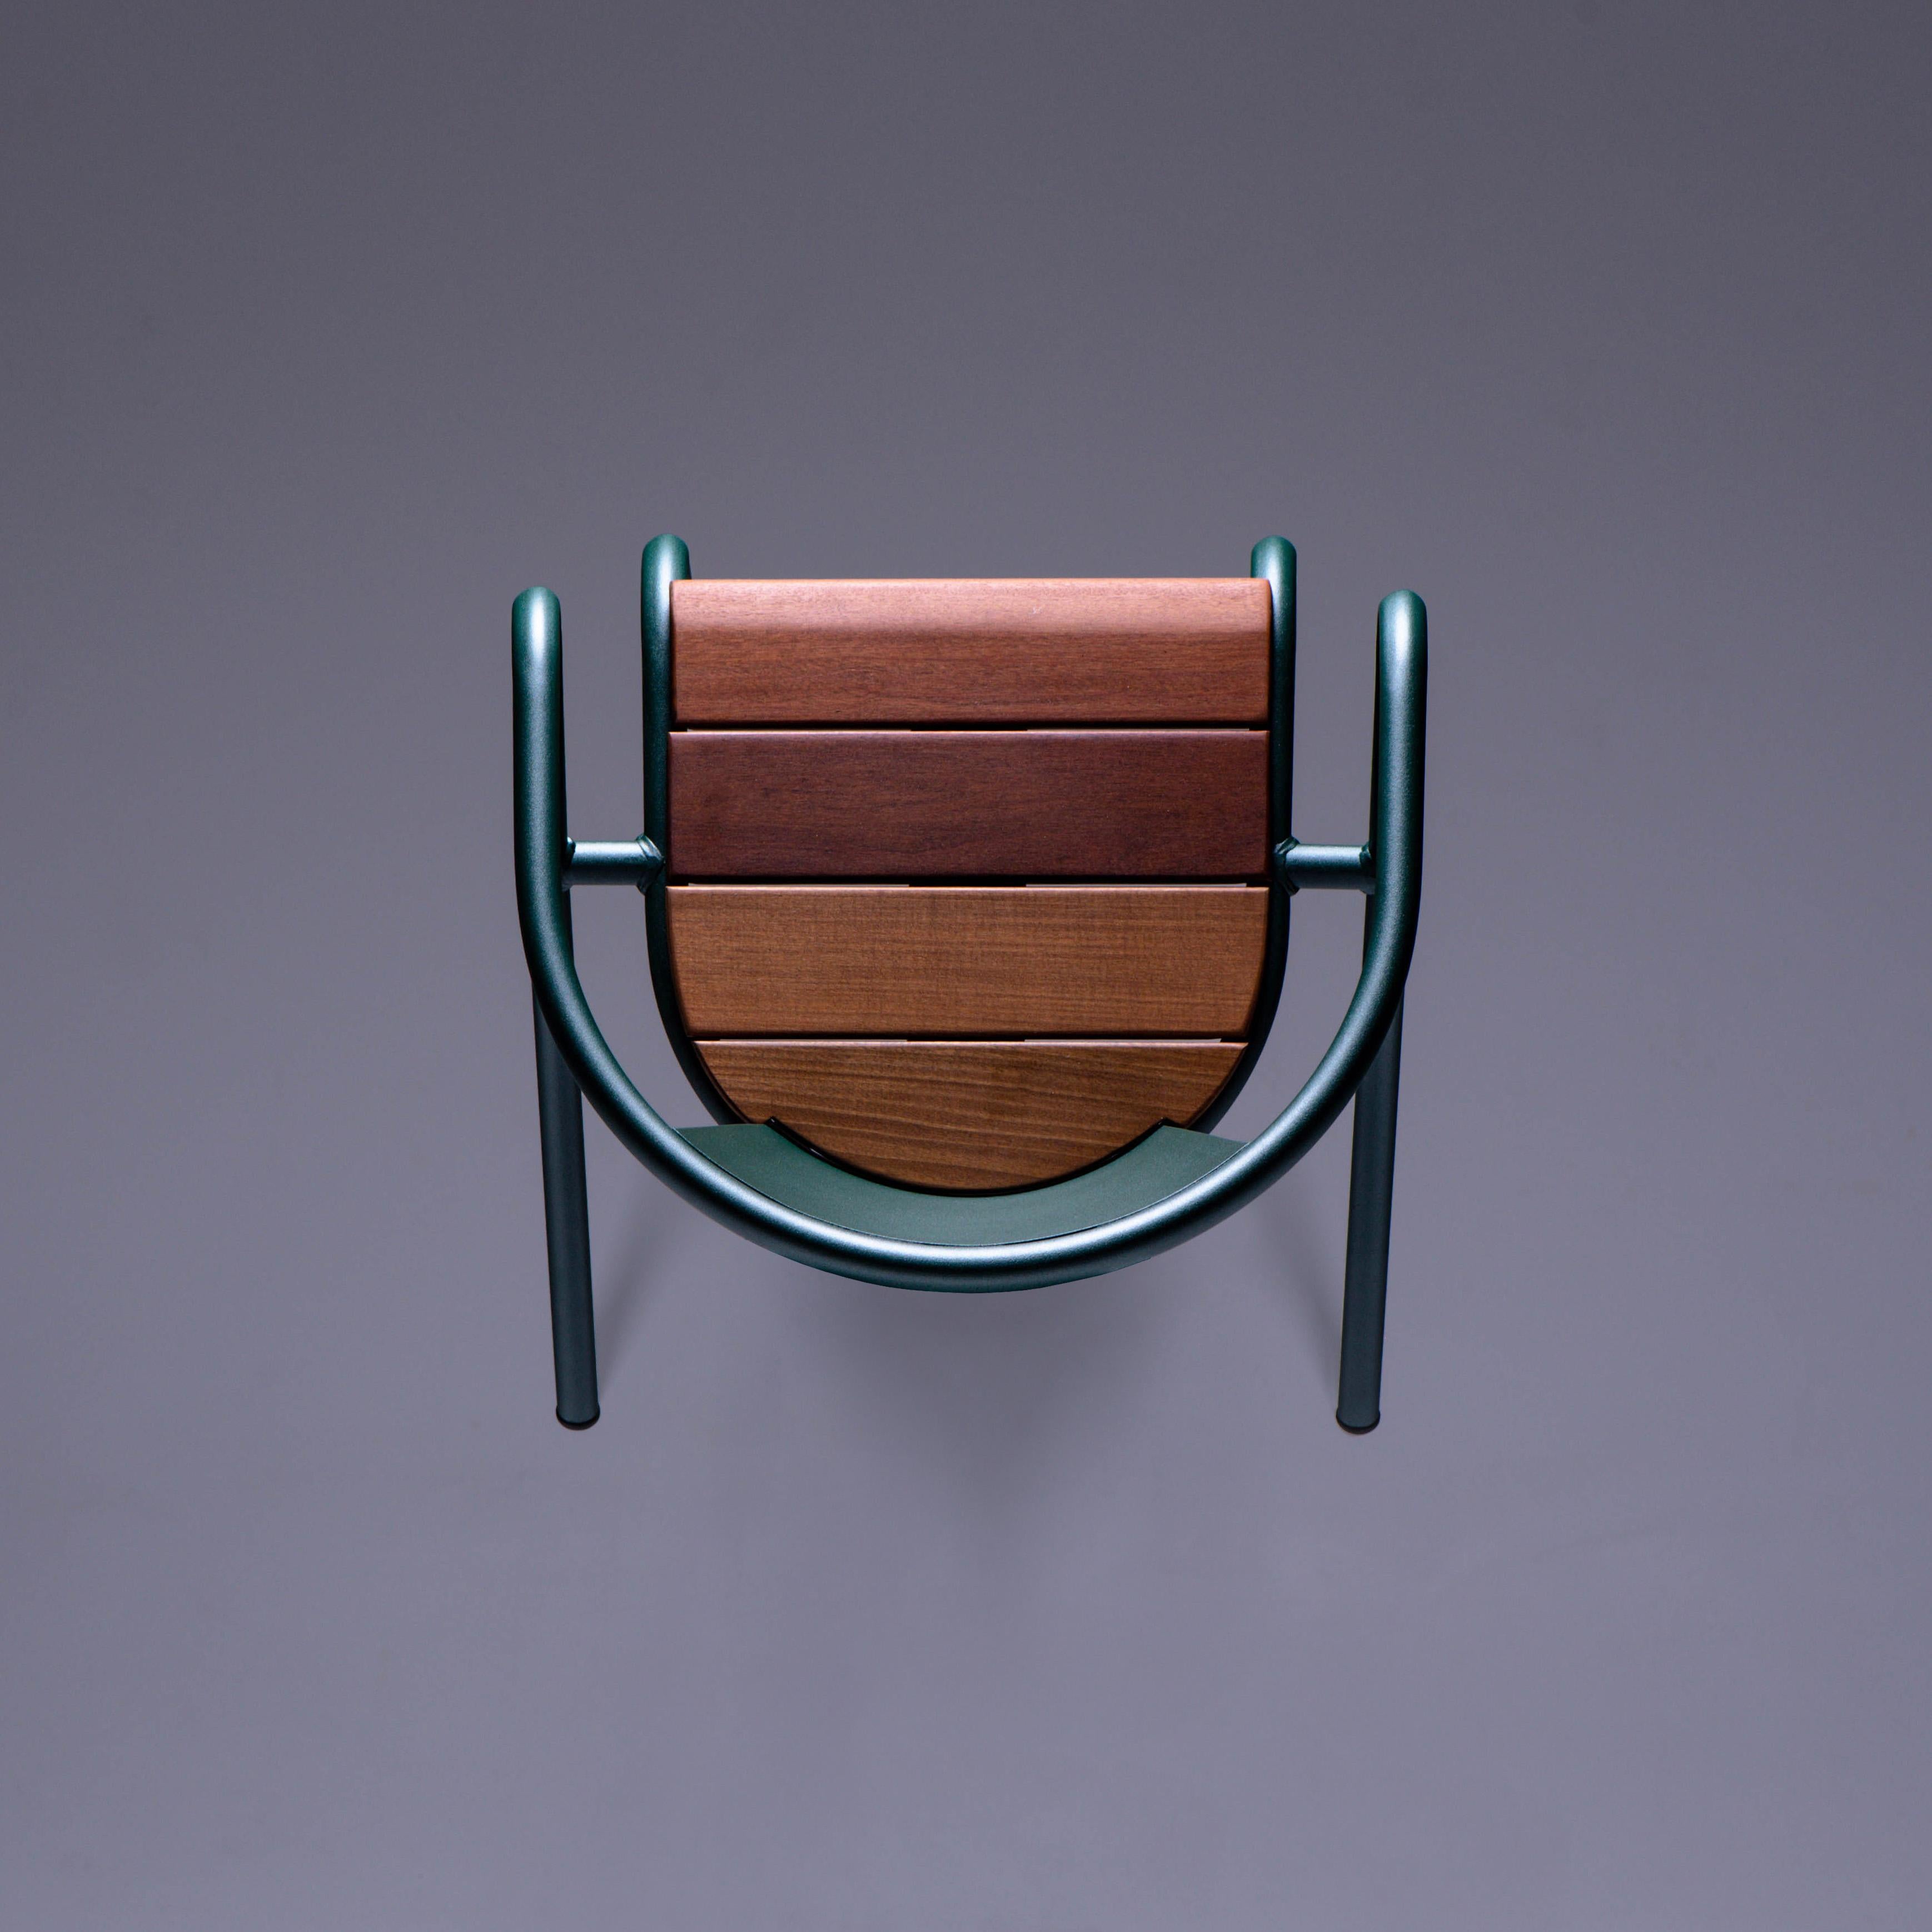 Der BICA-Stuhl ist ein nachhaltiger, stapelbarer Stahlsessel, der für den Außenbereich aus recyceltem und wiederverwertbarem Stahl hergestellt und mit unserer erstklassigen Auswahl an Pulverbeschichtungsfarben, in diesem Fall in einem satten,